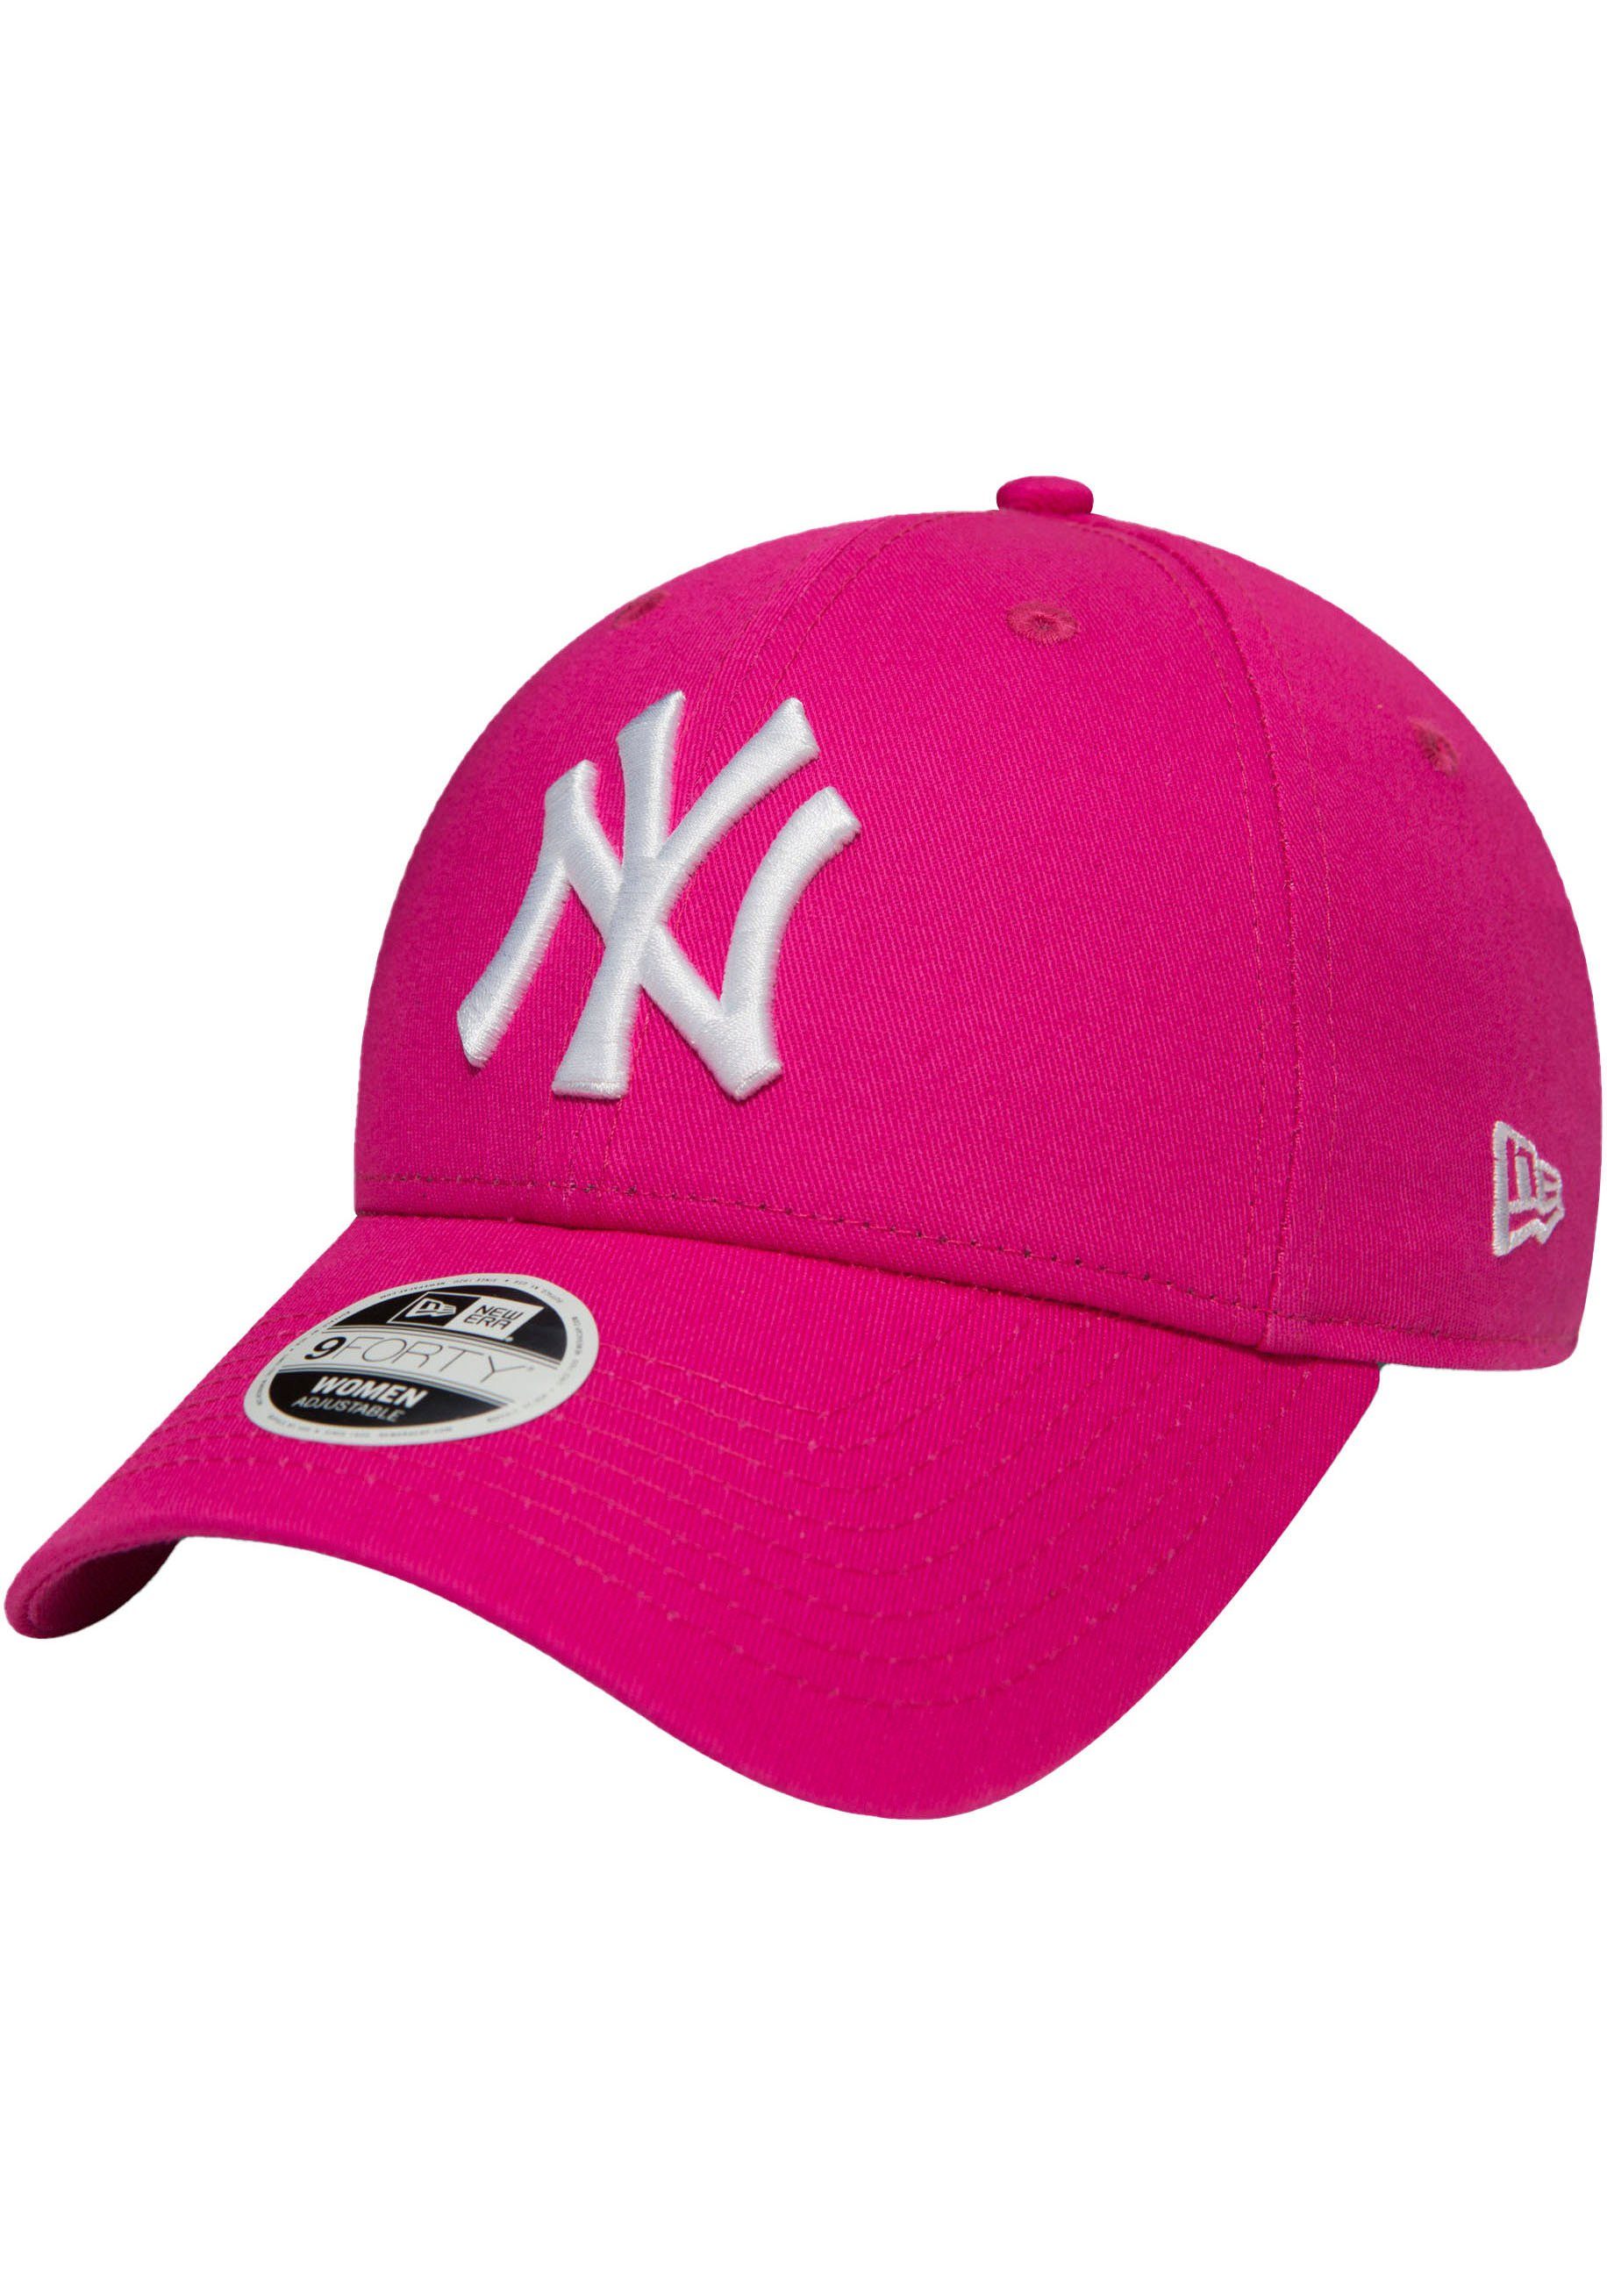 New Era Baseball Cap Basecap NEW YANKEES YORK